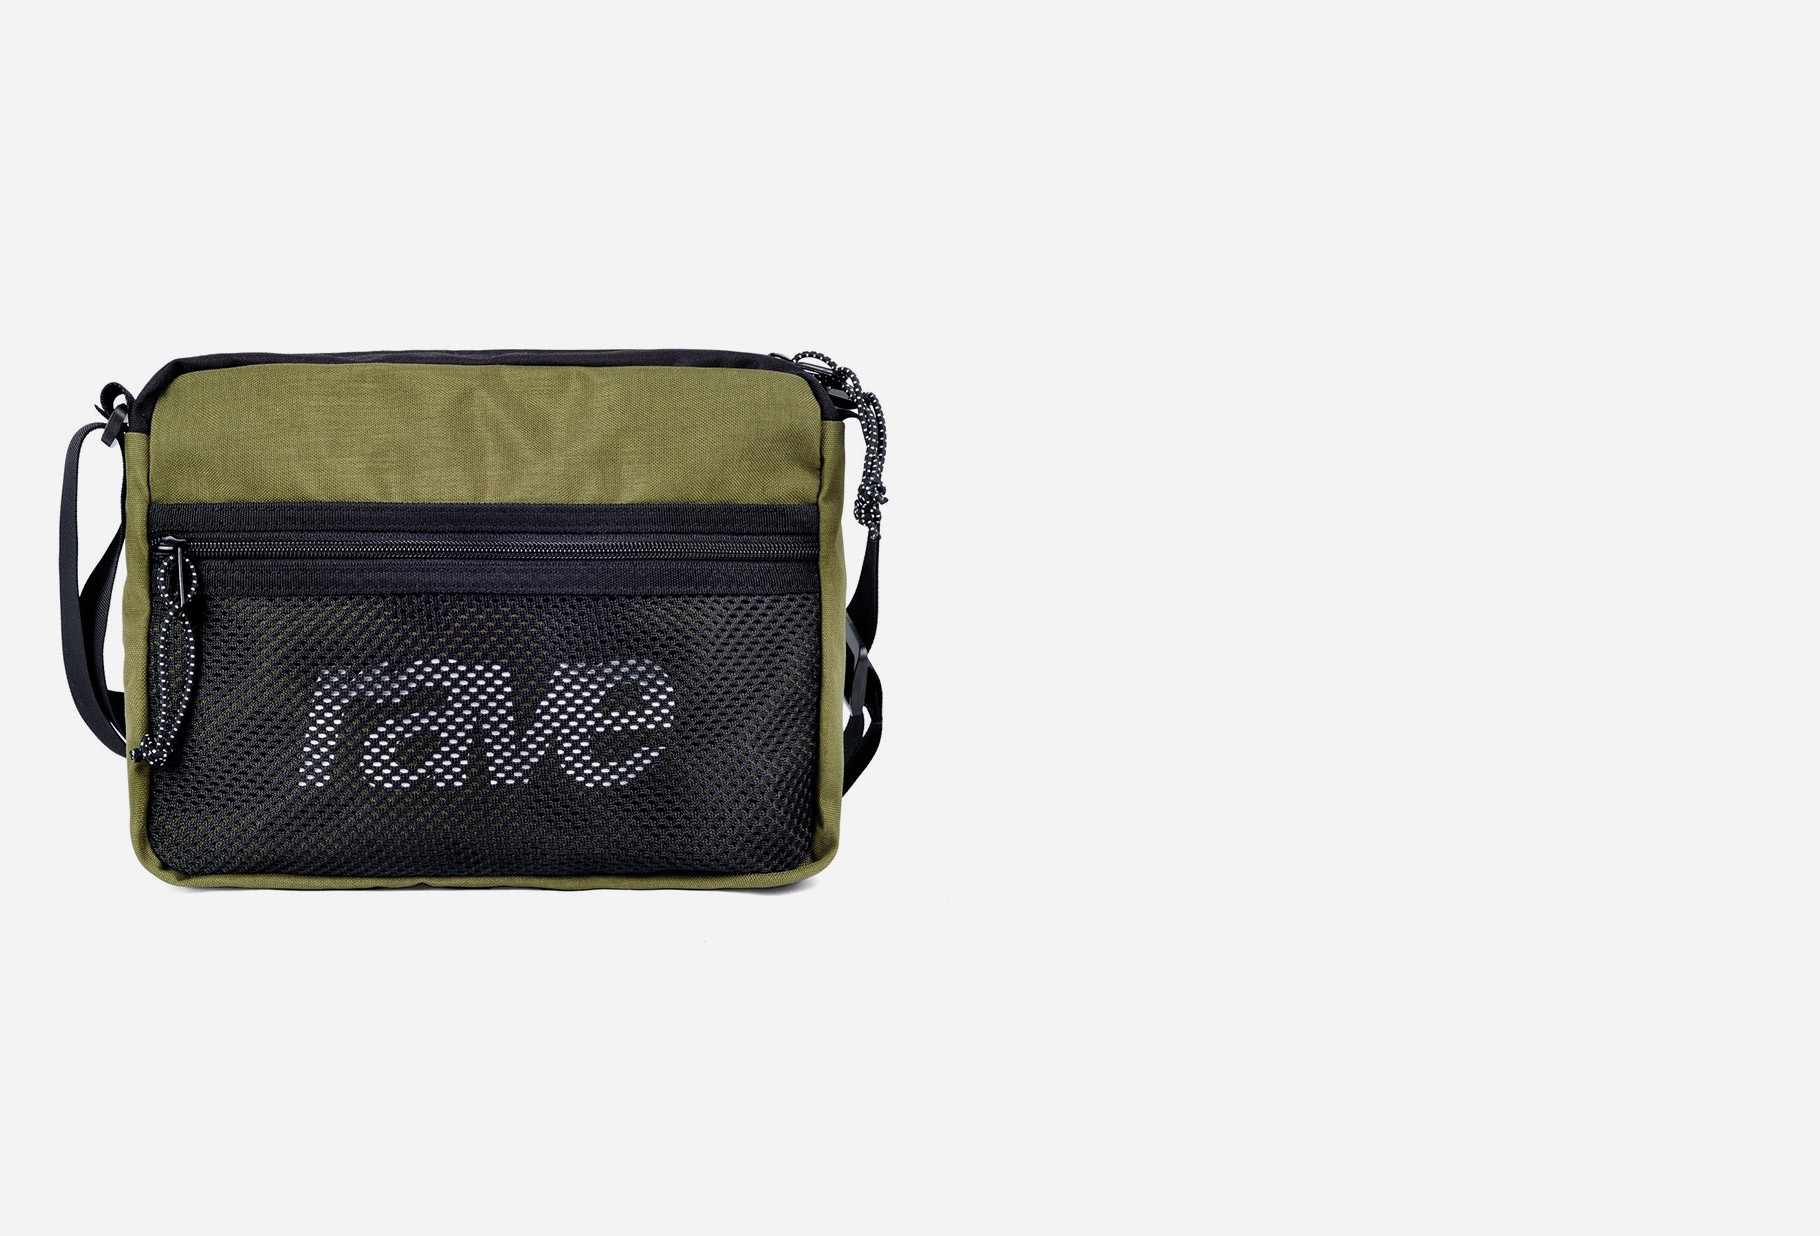 RAVE SKATEBOARDS / Shoulder bag Olive